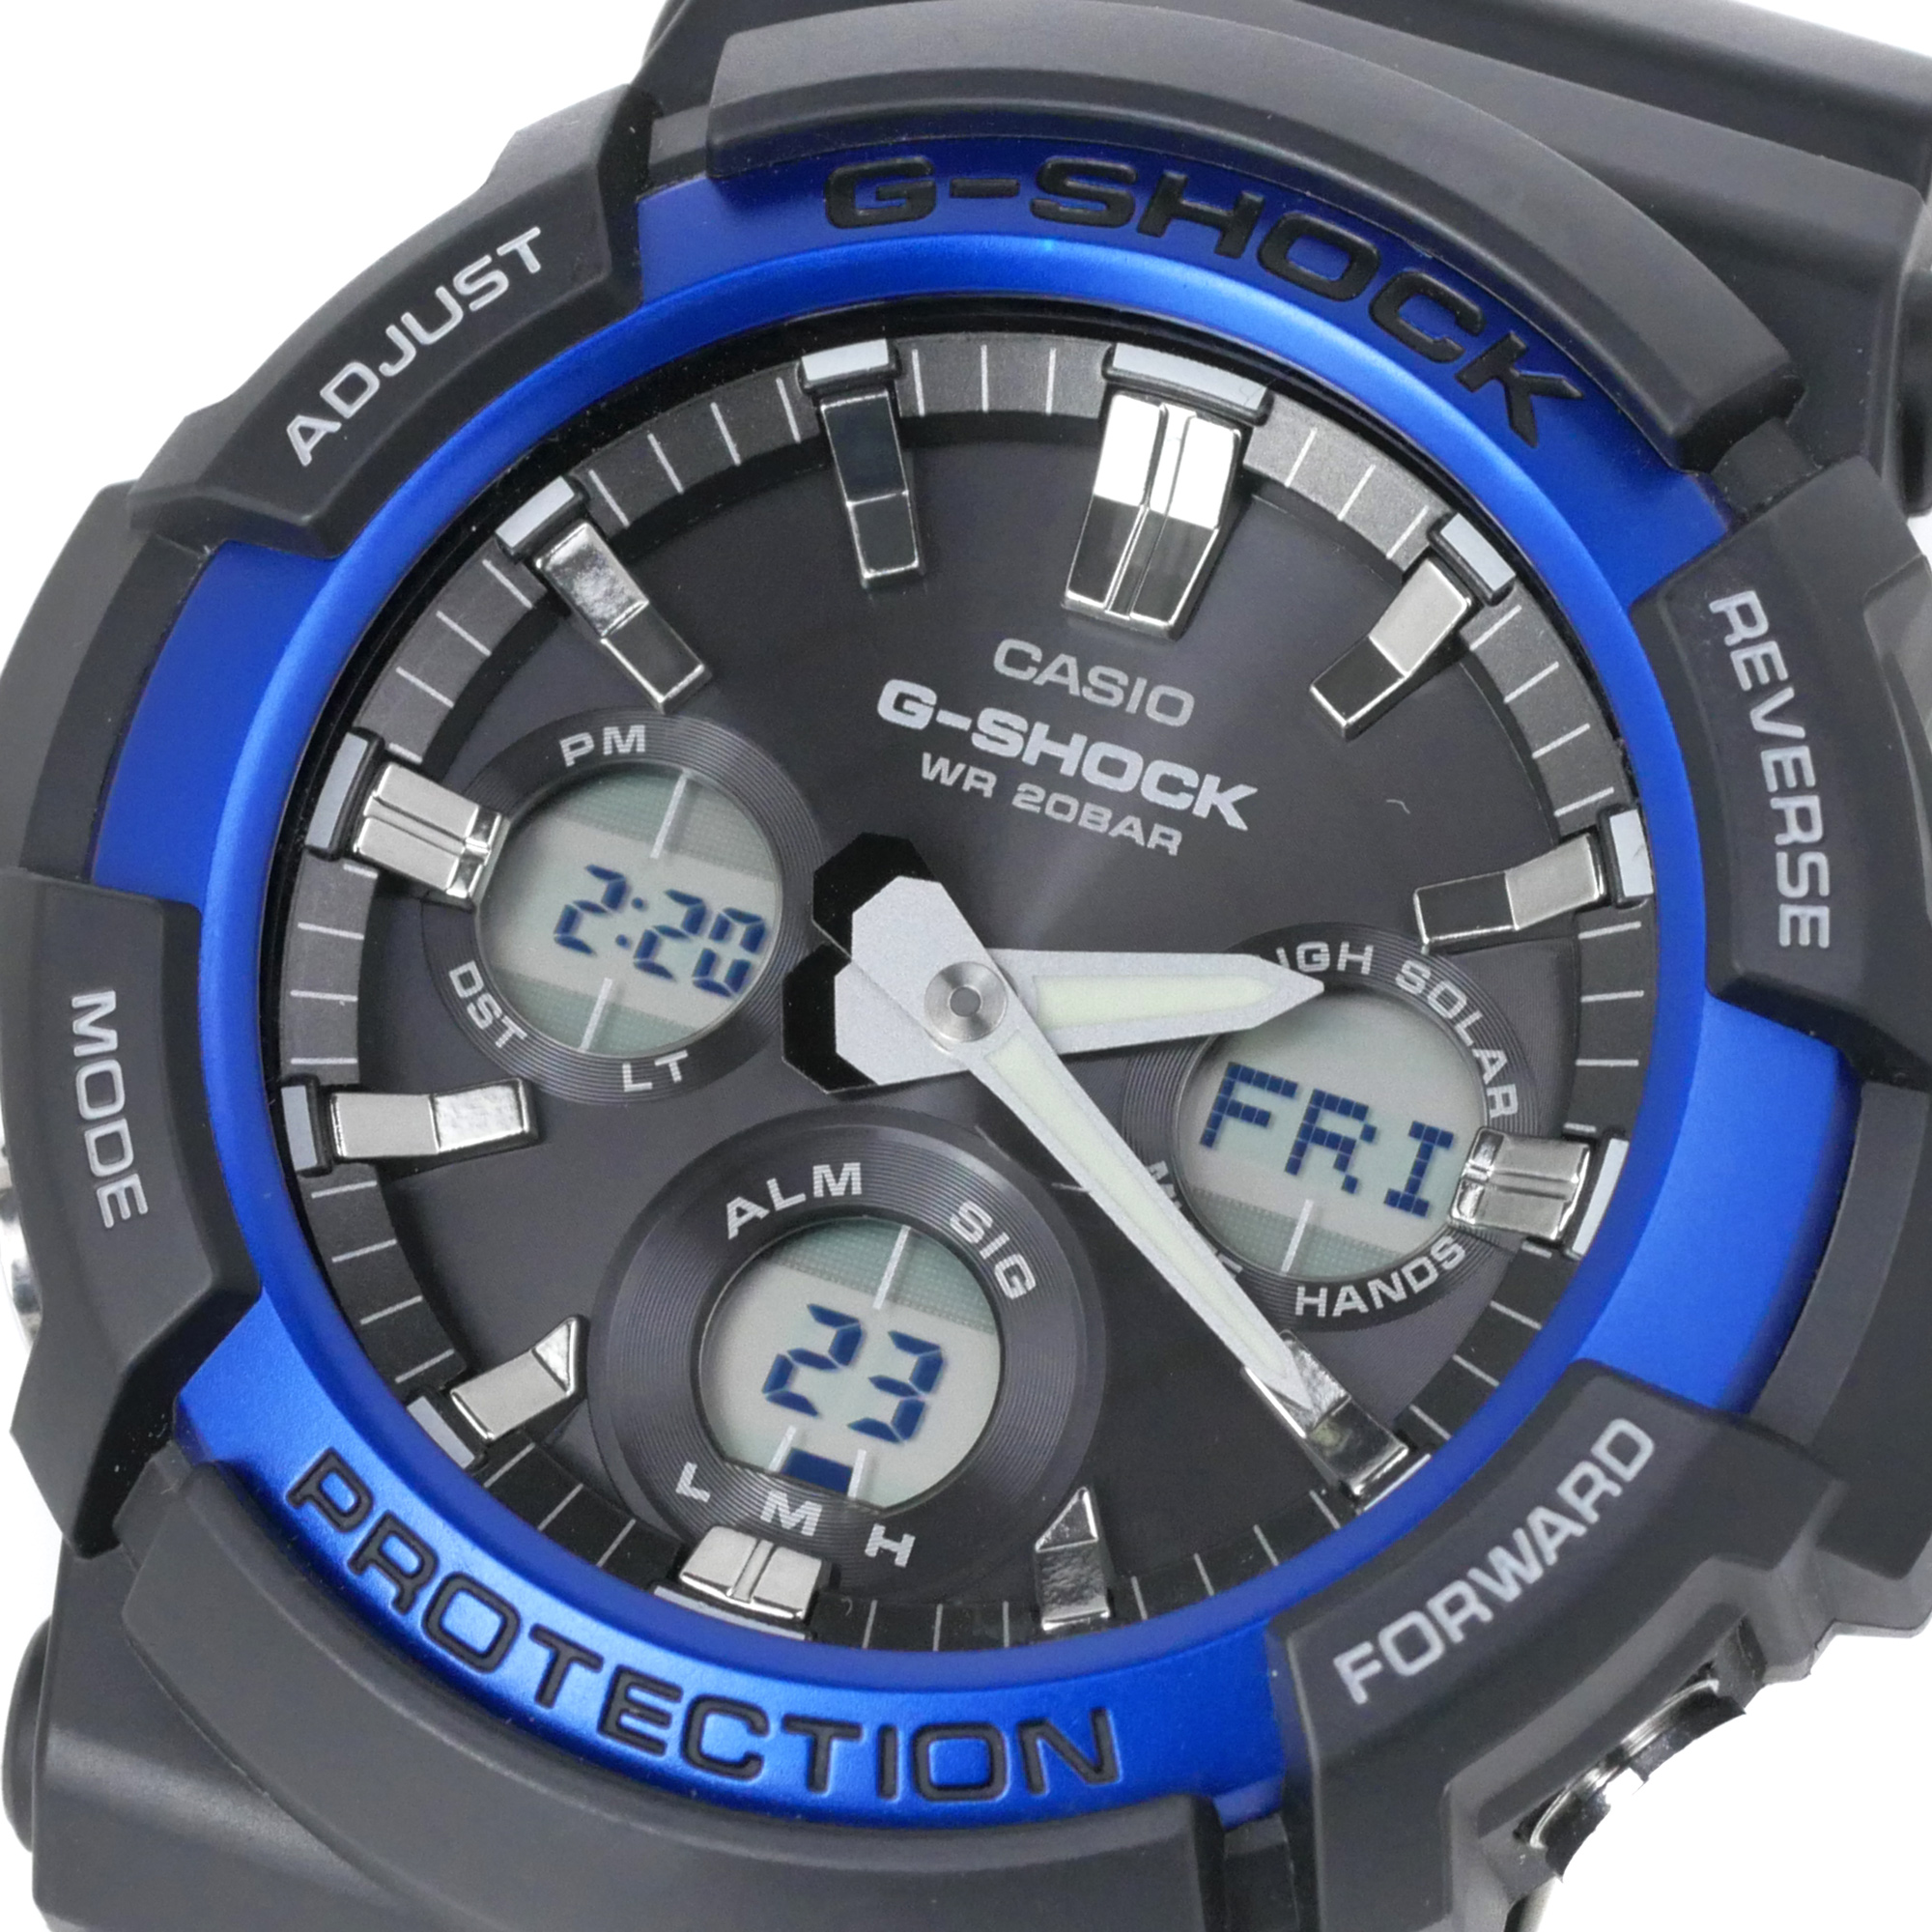 Casio G-Shock Solar Powered Analog-Digital Watch GAS100B-1A2